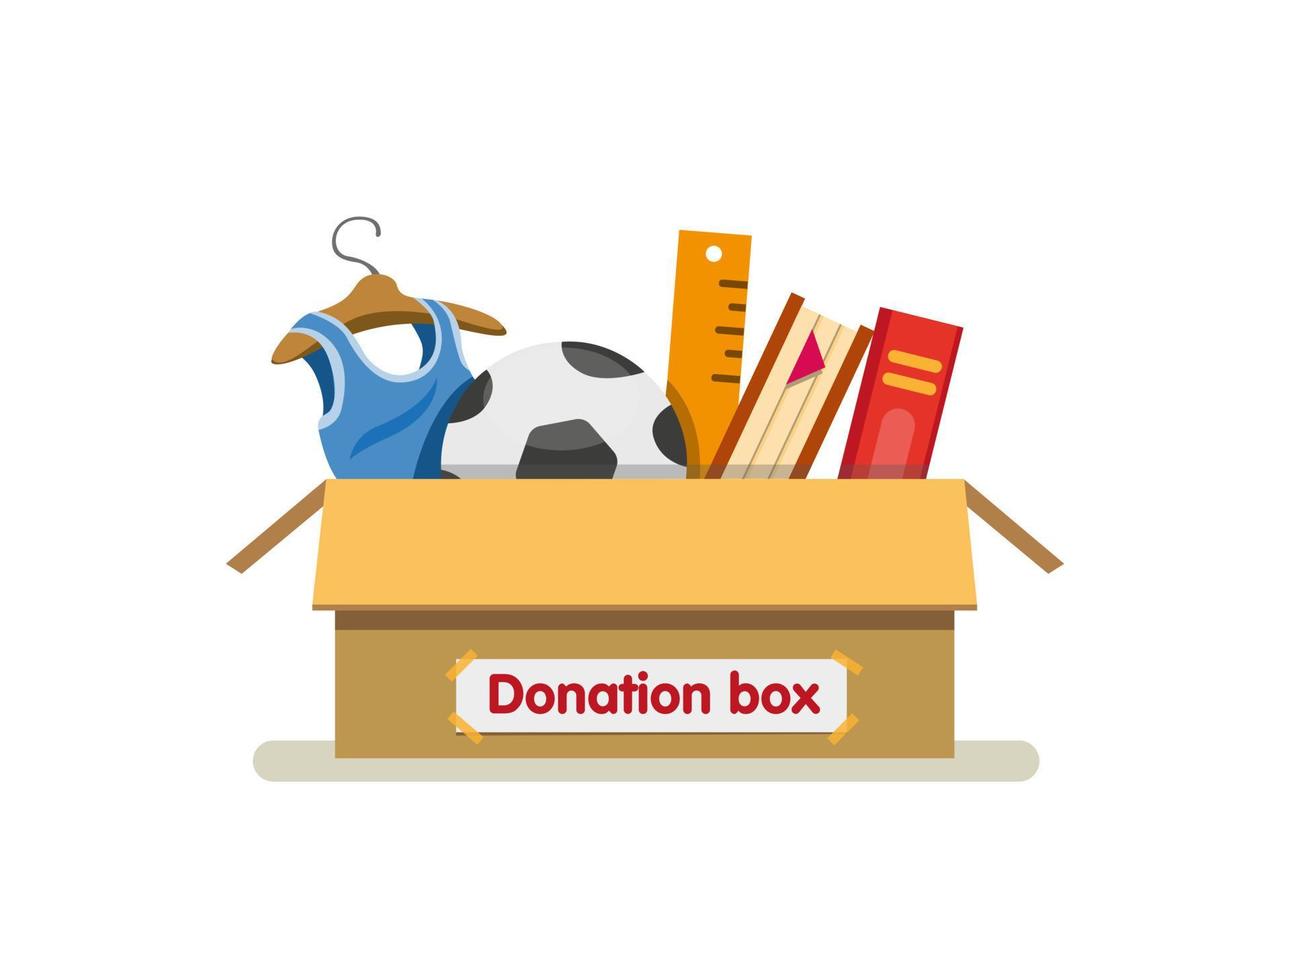 böcker, leksaker och kläder i donationslåda kartong redo skicka för välgörenhet i tecknad platt illustration vektor isolerad i vit bakgrund